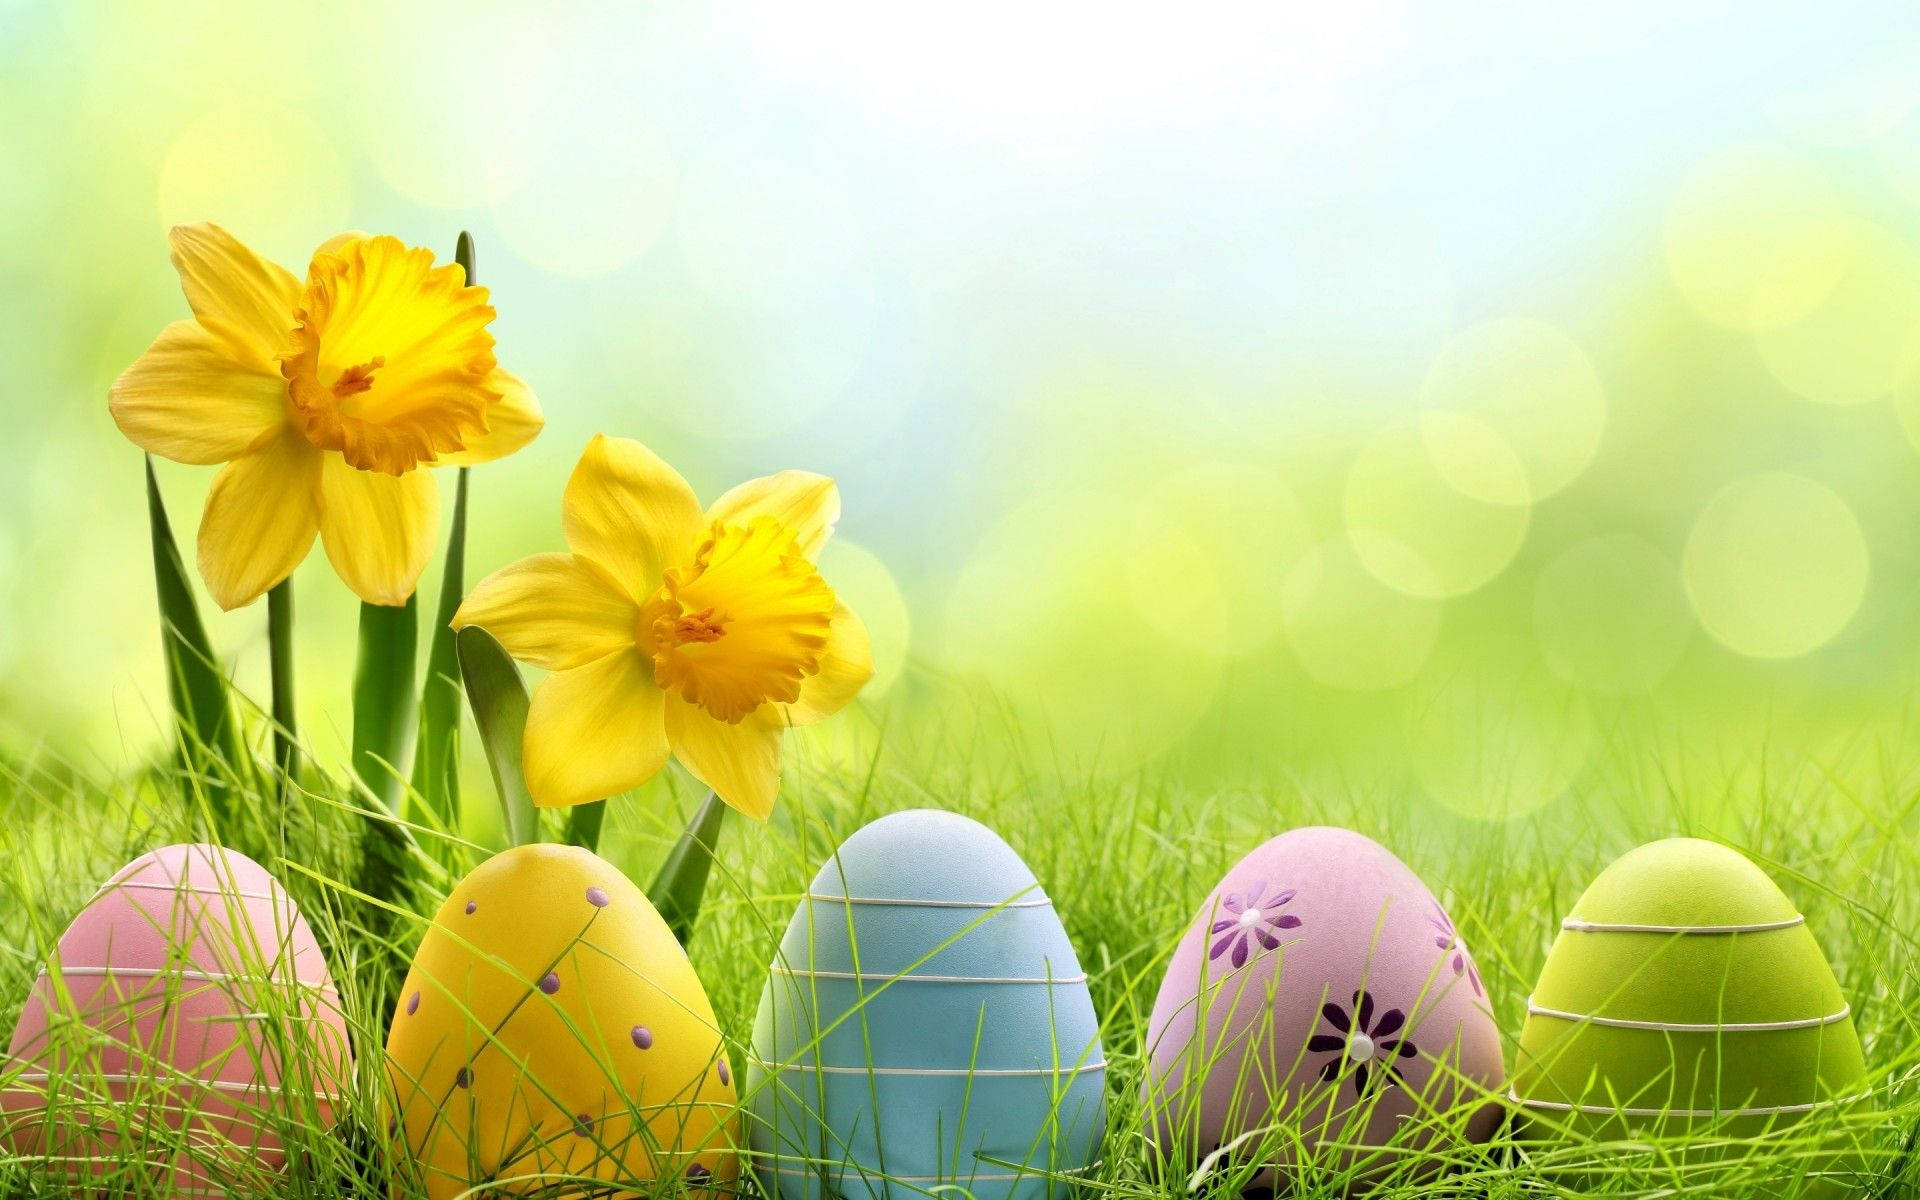 Easter: Lễ Phục sinh - một trong những ngày nghỉ quan trọng trong năm! Hãy xem hình ảnh liên quan đến lễ hội này để trải nghiệm không khí tưng bừng của lễ hội và cảm nhận sự tươi vui trong mùa xuân.